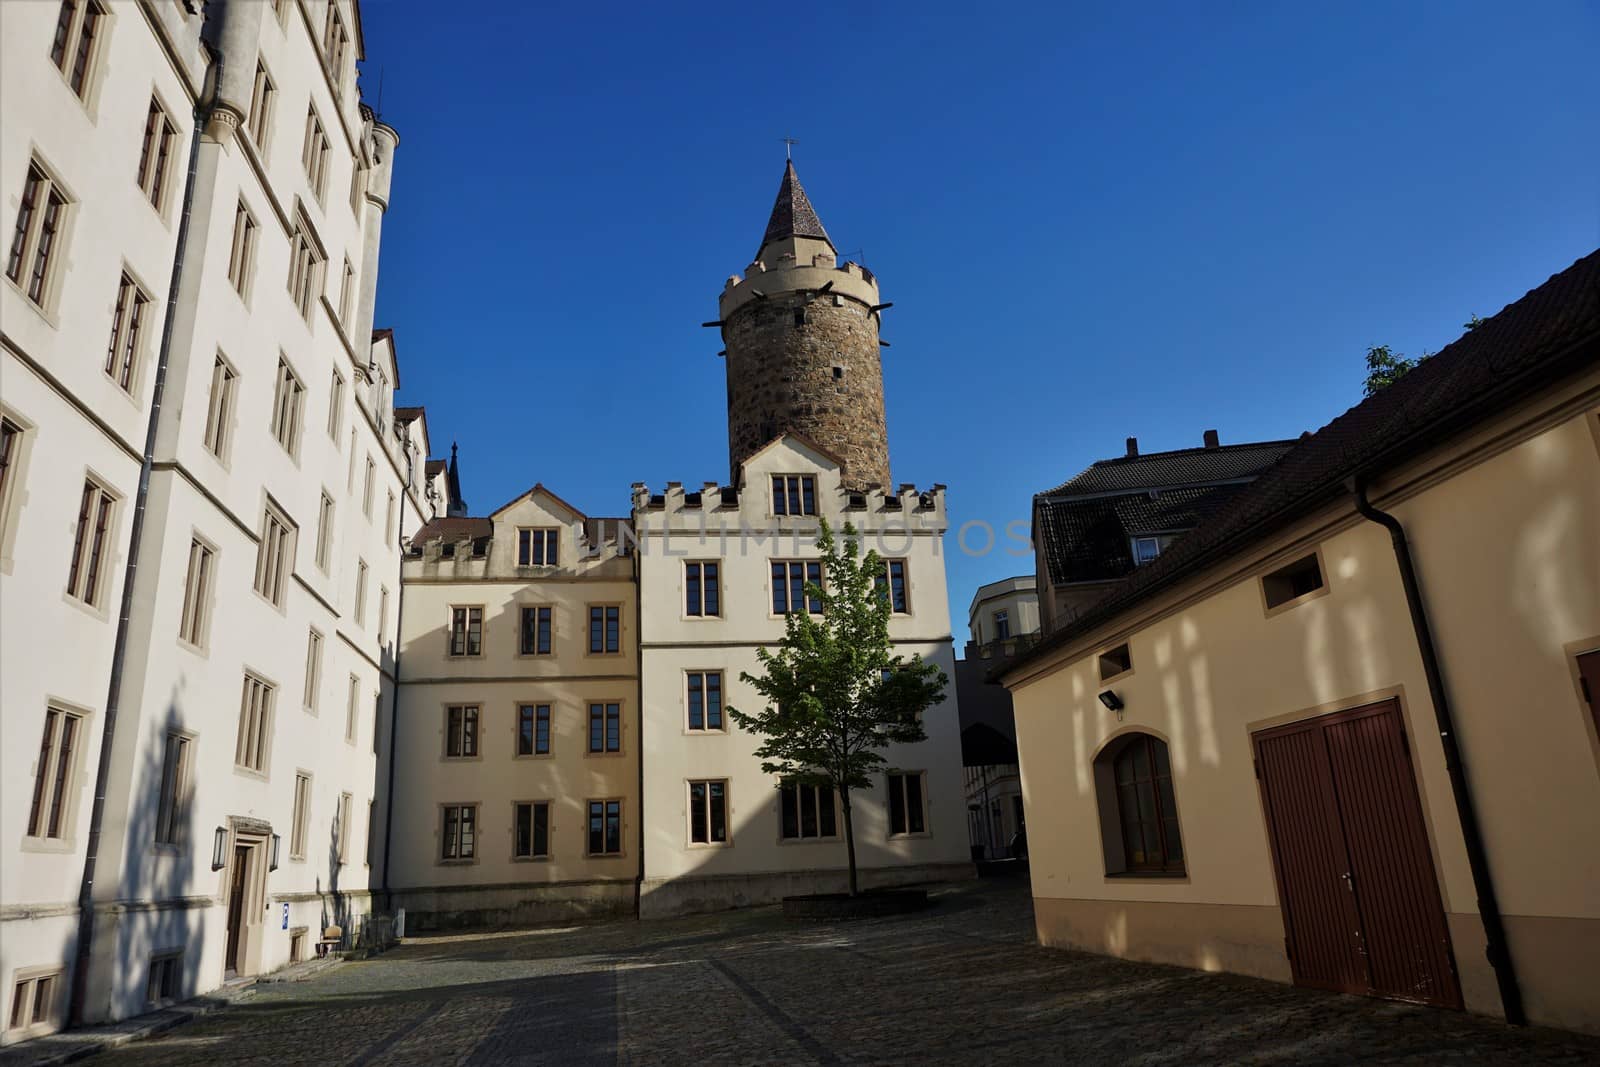 Wendish tower in Bautzen, Germany behind old caserne